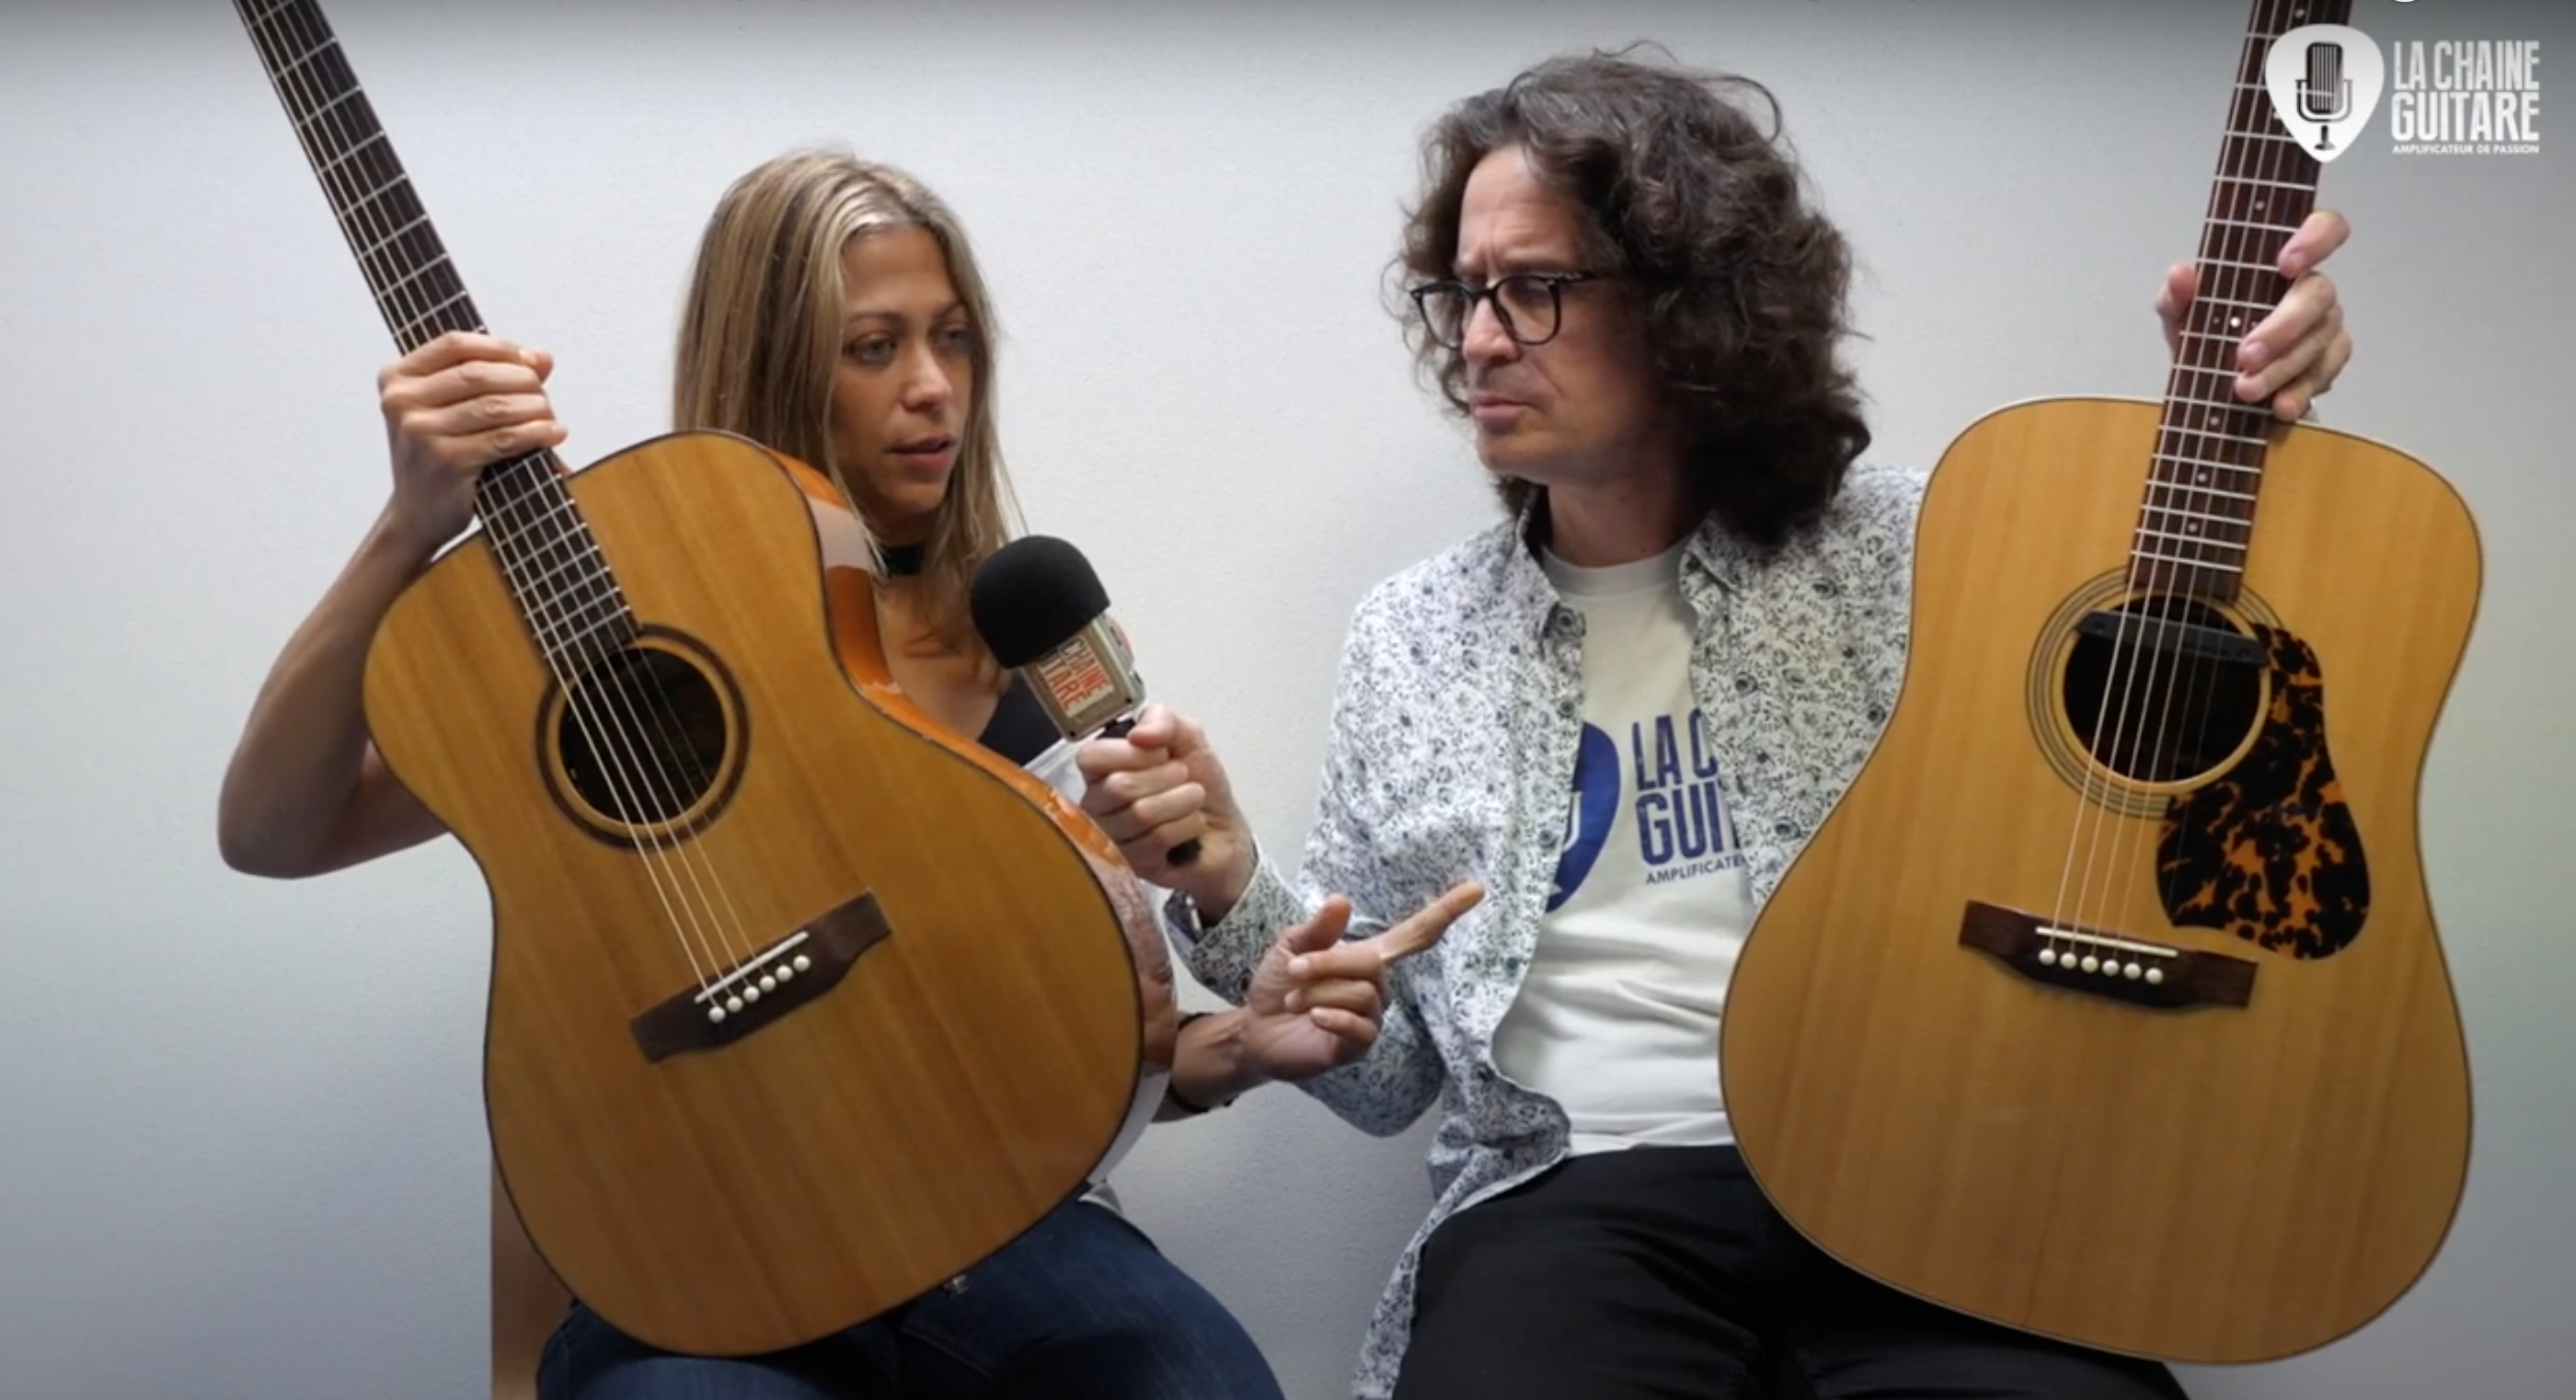 Célia Enoc, interview de la luthière qui présente ses dernières créations